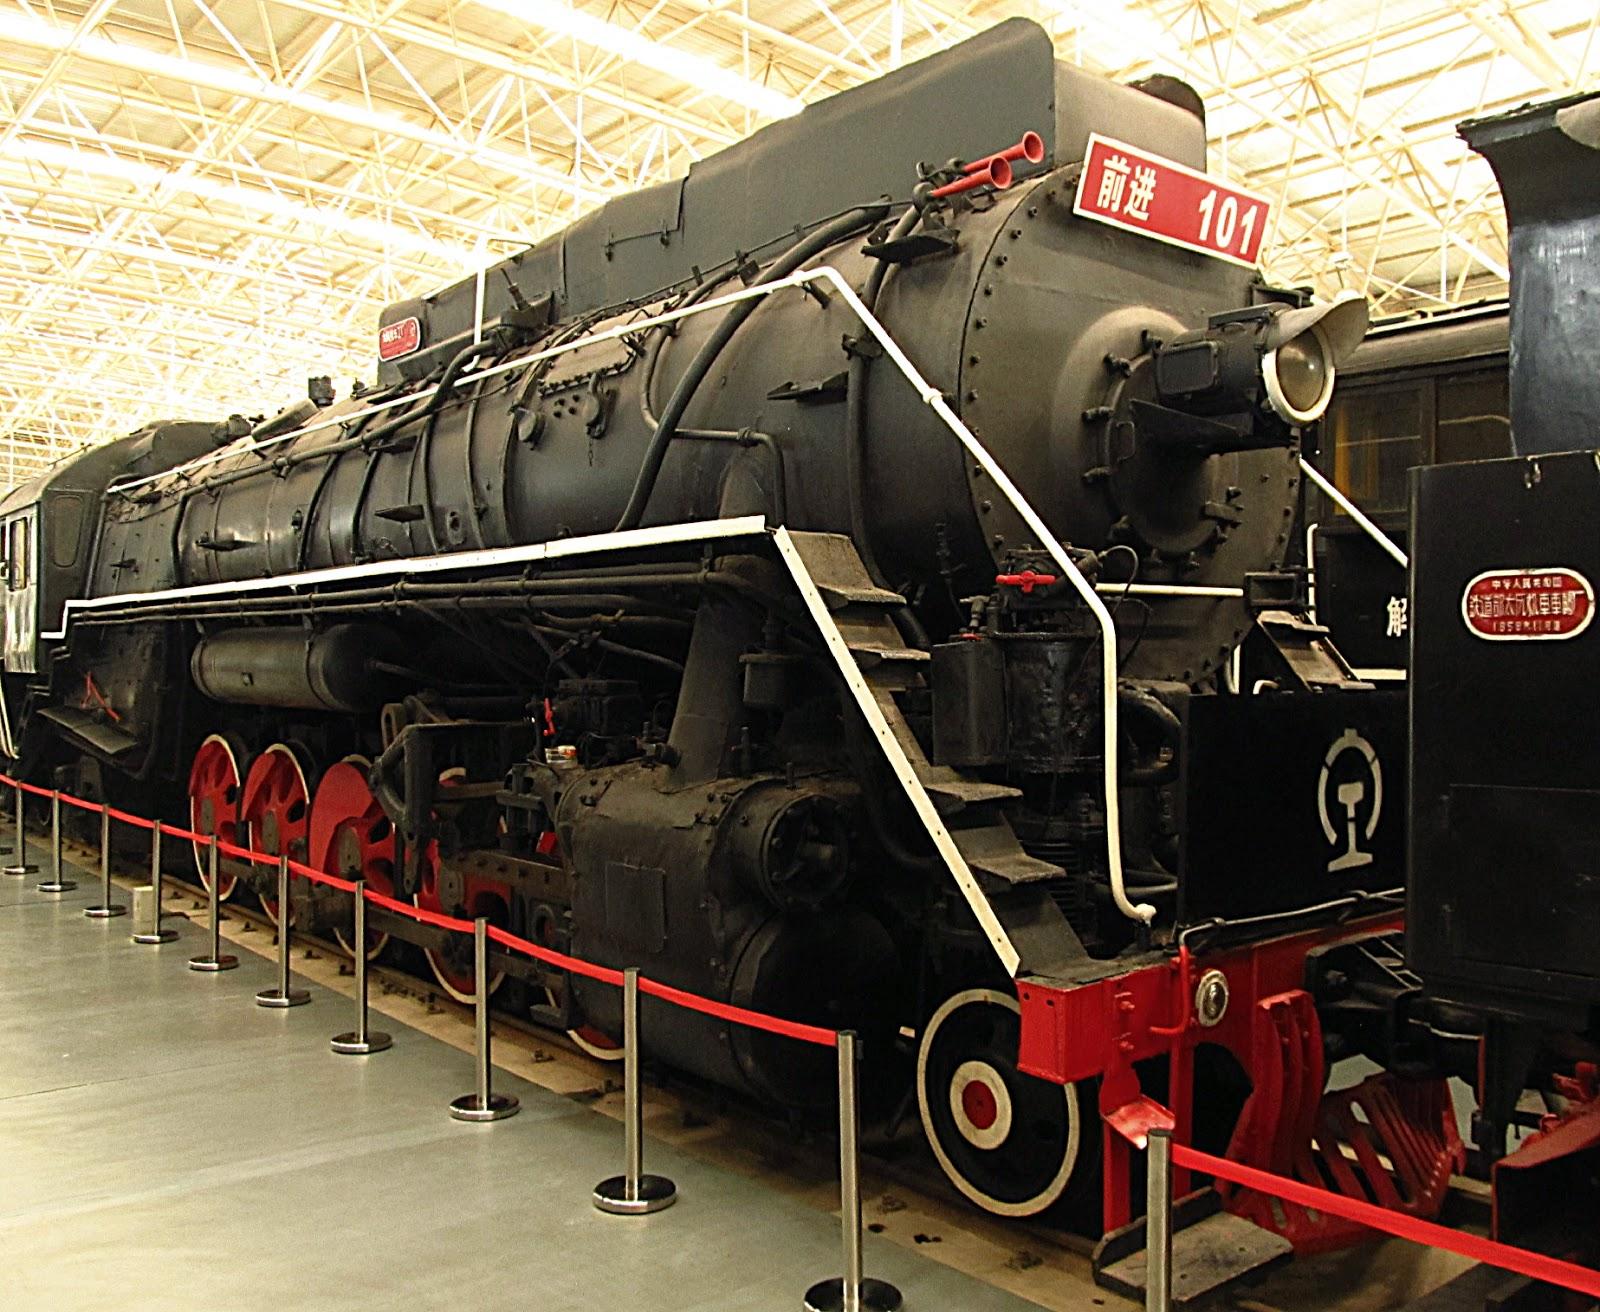 集通---蒸汽机车最后的天堂|文章|中国国家地理网